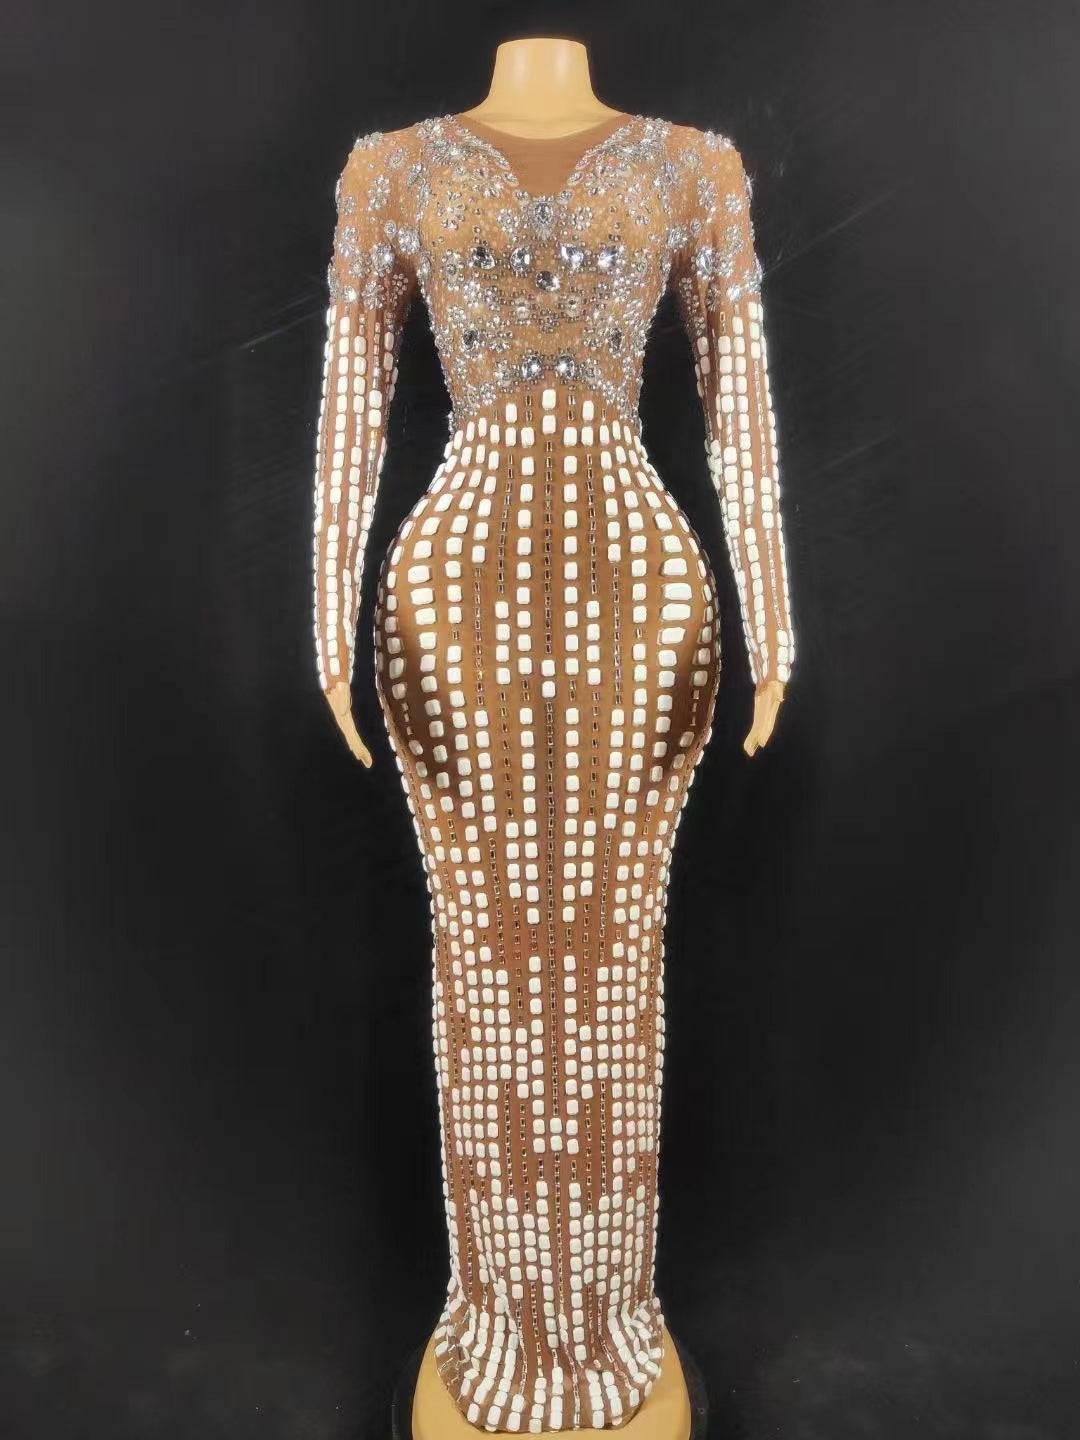 Velma Long Sleeve Rhinestone Embellished Maxi Dress - Hot fashionista